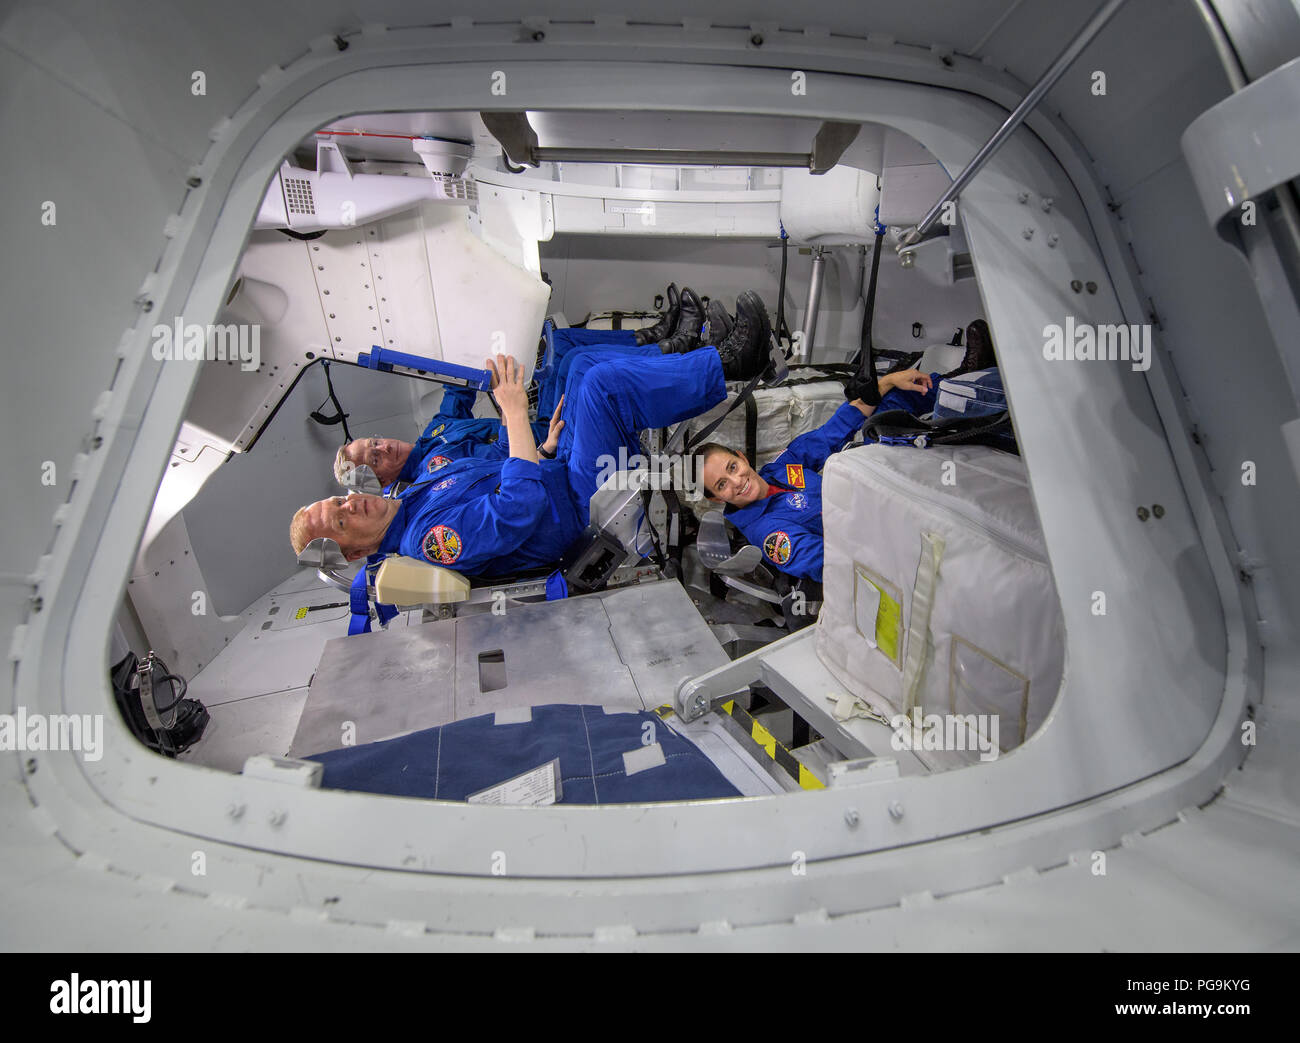 Les astronautes de la NASA Eric Boe, avant-plan gauche, et Nicole Mann, du premier plan à droite, le long de avec Boeing l'astronaute Chris Ferguson, l'arrière-plan, posent pour une photo à l'intérieur de la Maquette Boeing Formateur au Centre spatial Johnson de la NASA à Houston, Texas, le 2 août, 2018 d'avance sur l'équipe commerciale d'affectations vol 3 août annonce. Les trois ont été attribuées à lancer à bord du Boeing CST-100 15 sur son test en vol de l'équipage prévu pour la mi-2019 en partenariat avec l'équipage de la NASA Programme commercial. Banque D'Images